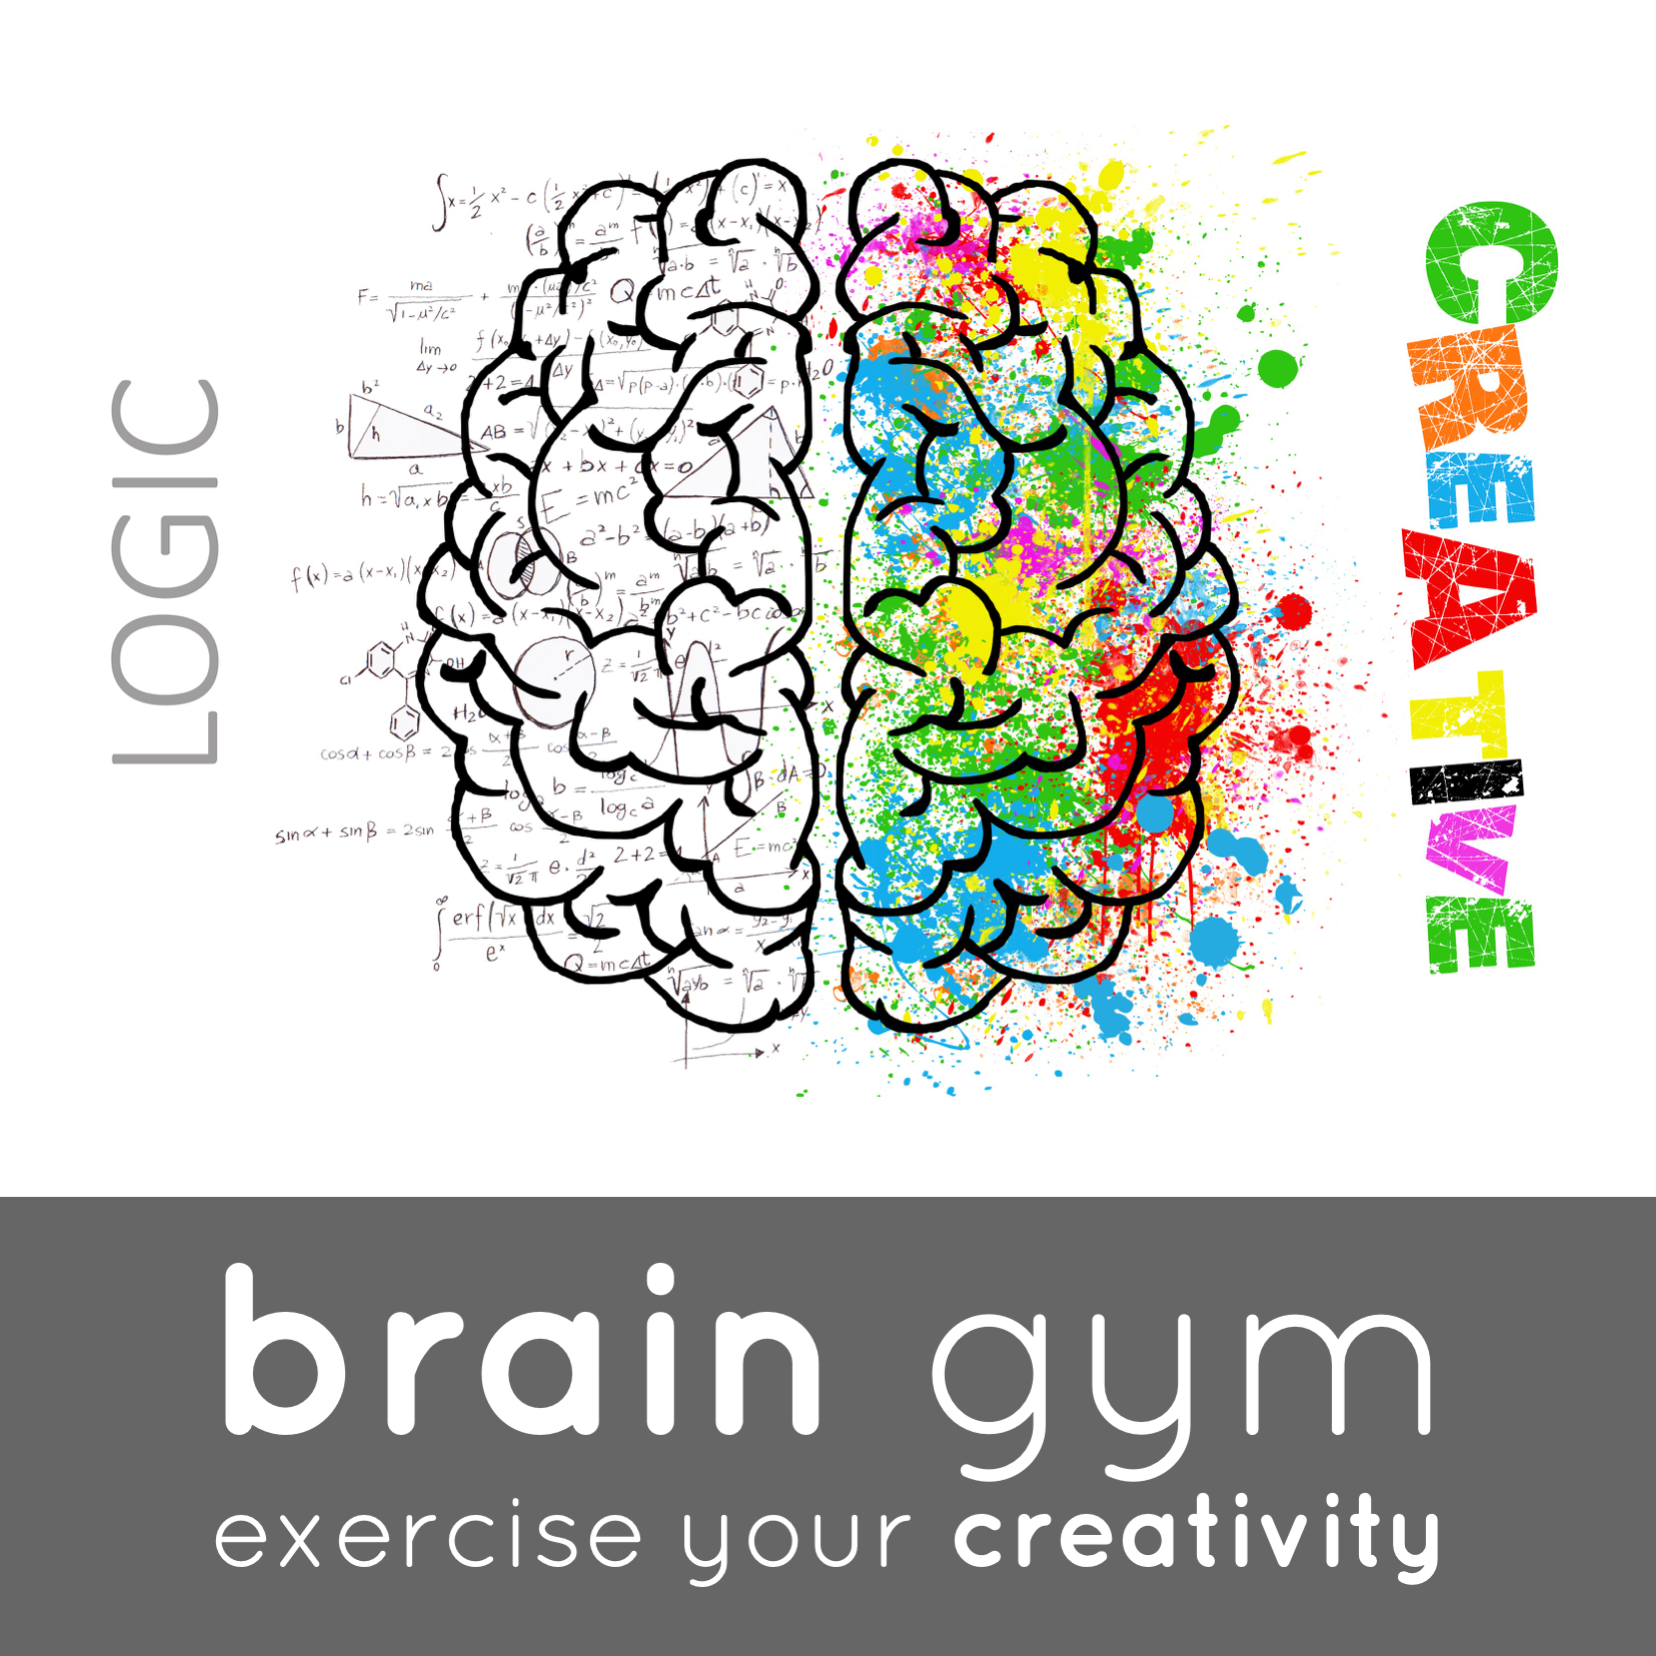 Unusual Games - Brain Gym for Innovation & Creativity